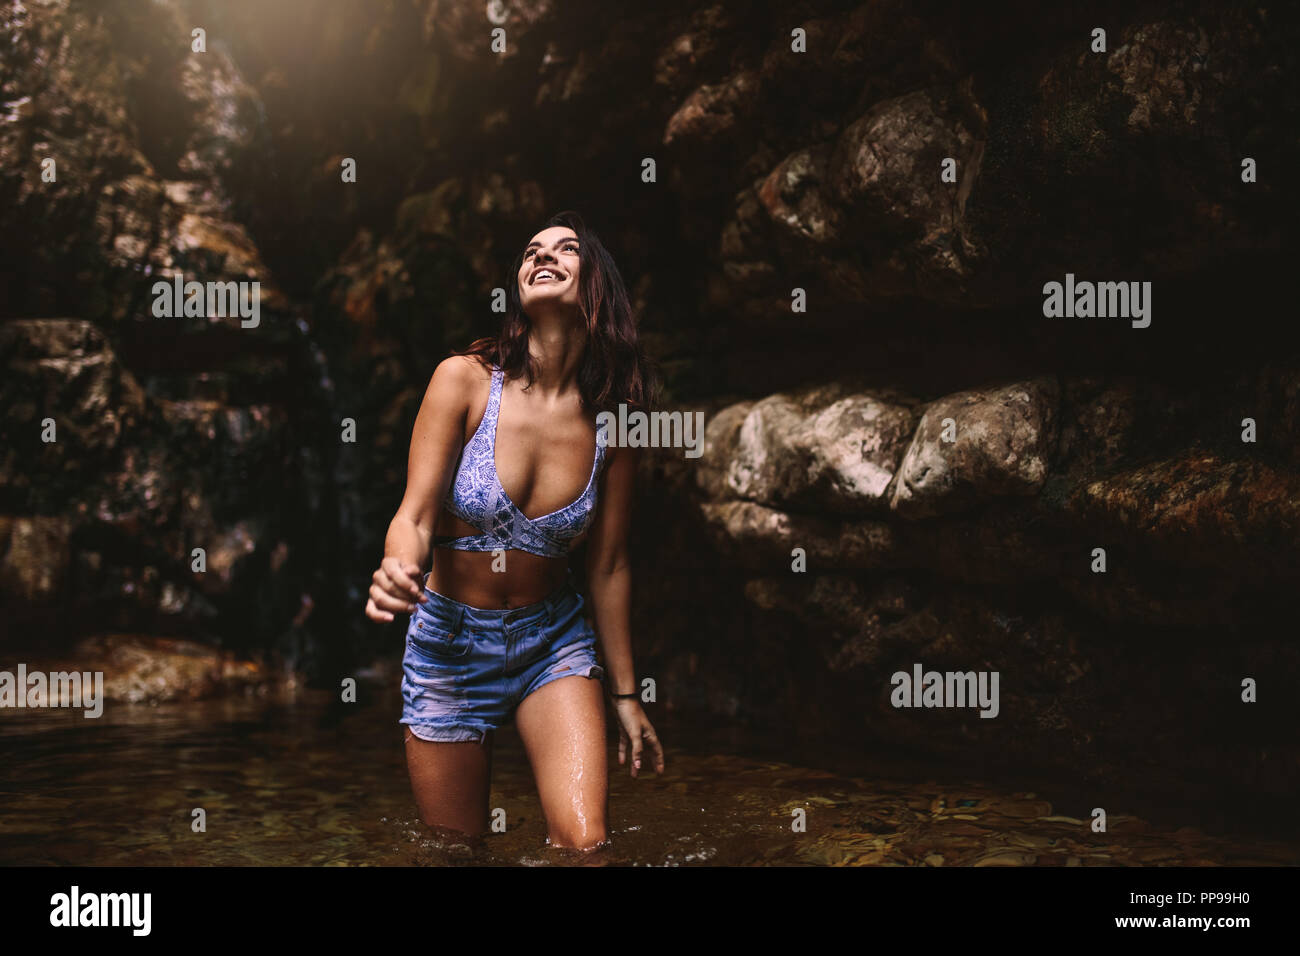 Junge kaukasier schöne Frau Tourist in einen Wasserfall, Teich im Dschungel suchen und lächelnd. Schöne Mädchen mit Bikini Top und Shorts im Teich Stockfoto